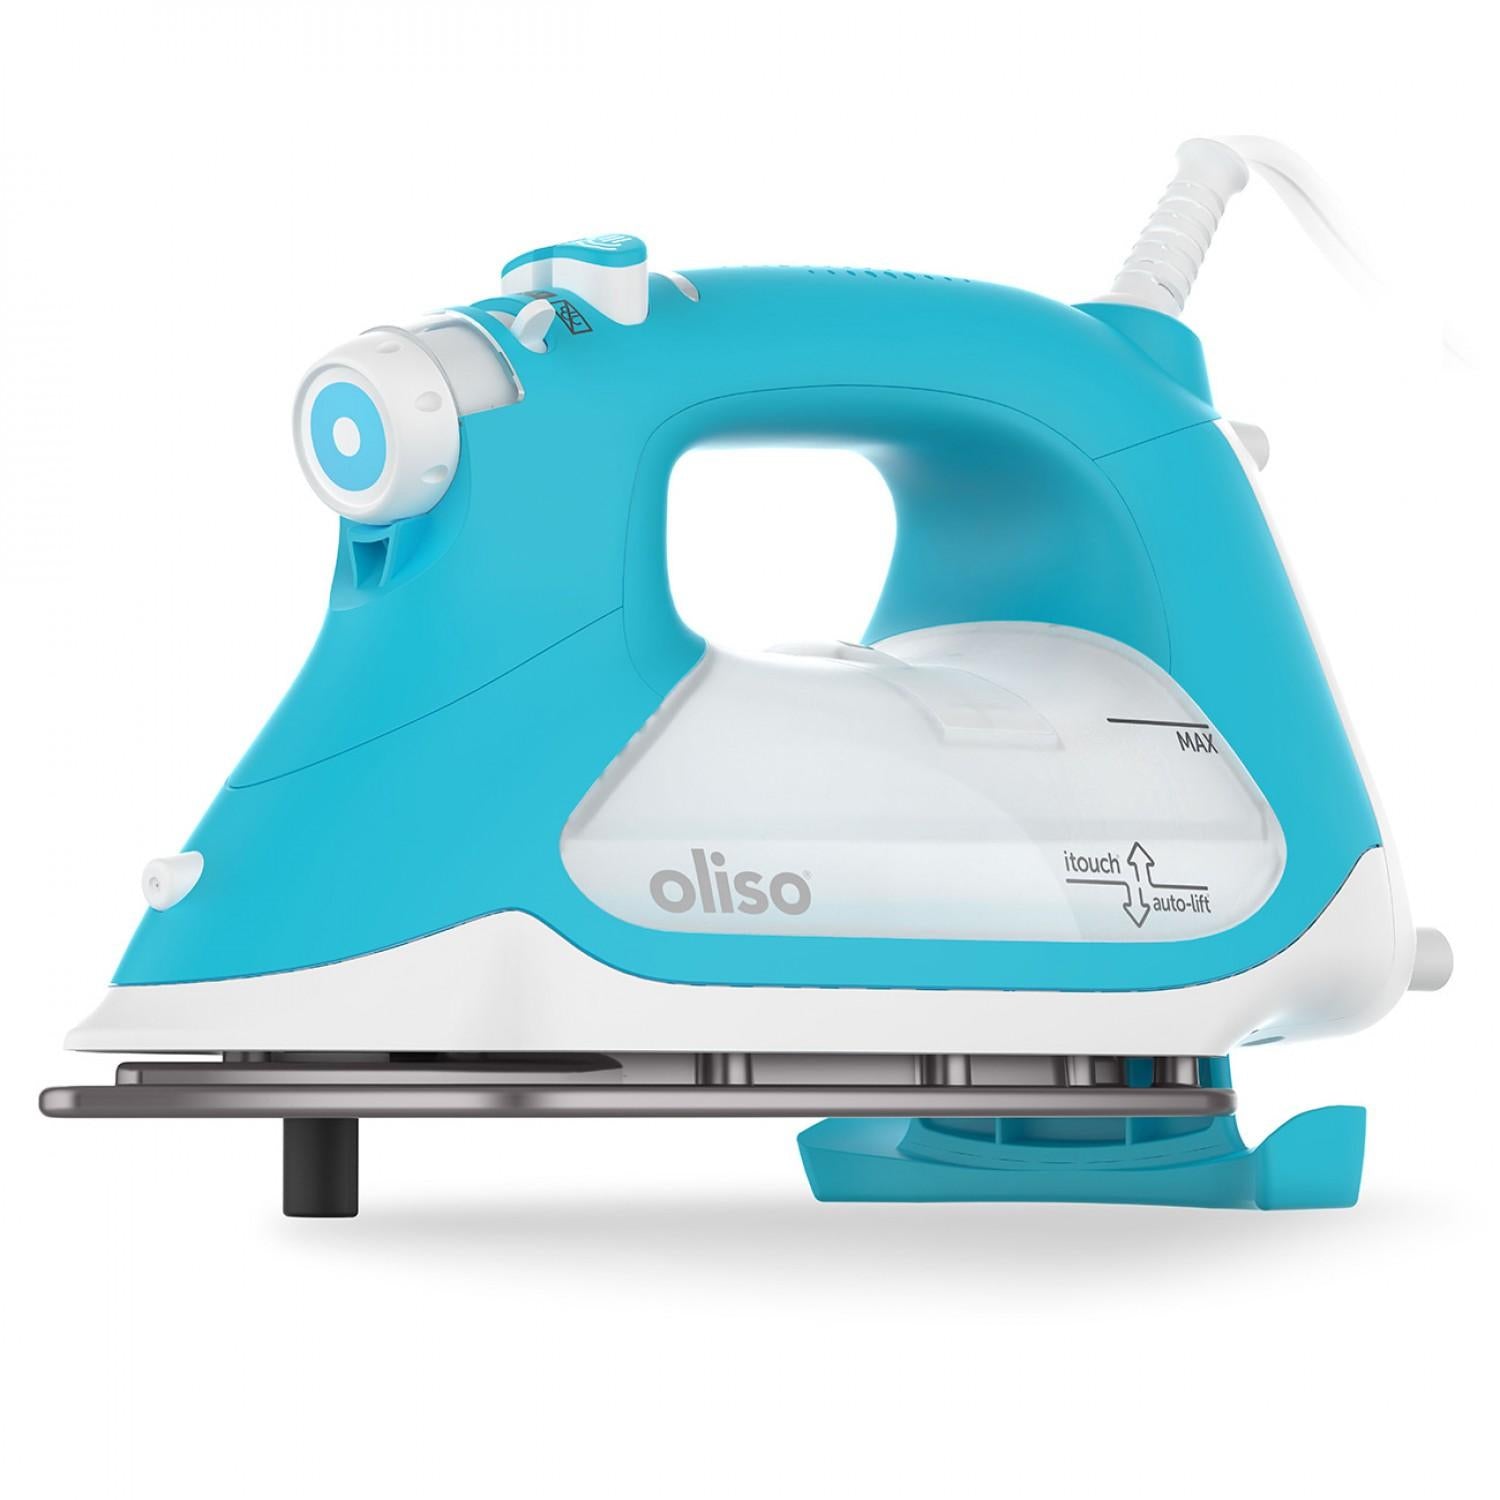 OLISO PROTM TG1600 Pro Plus Smart Iron - Turquoise 0 5801602